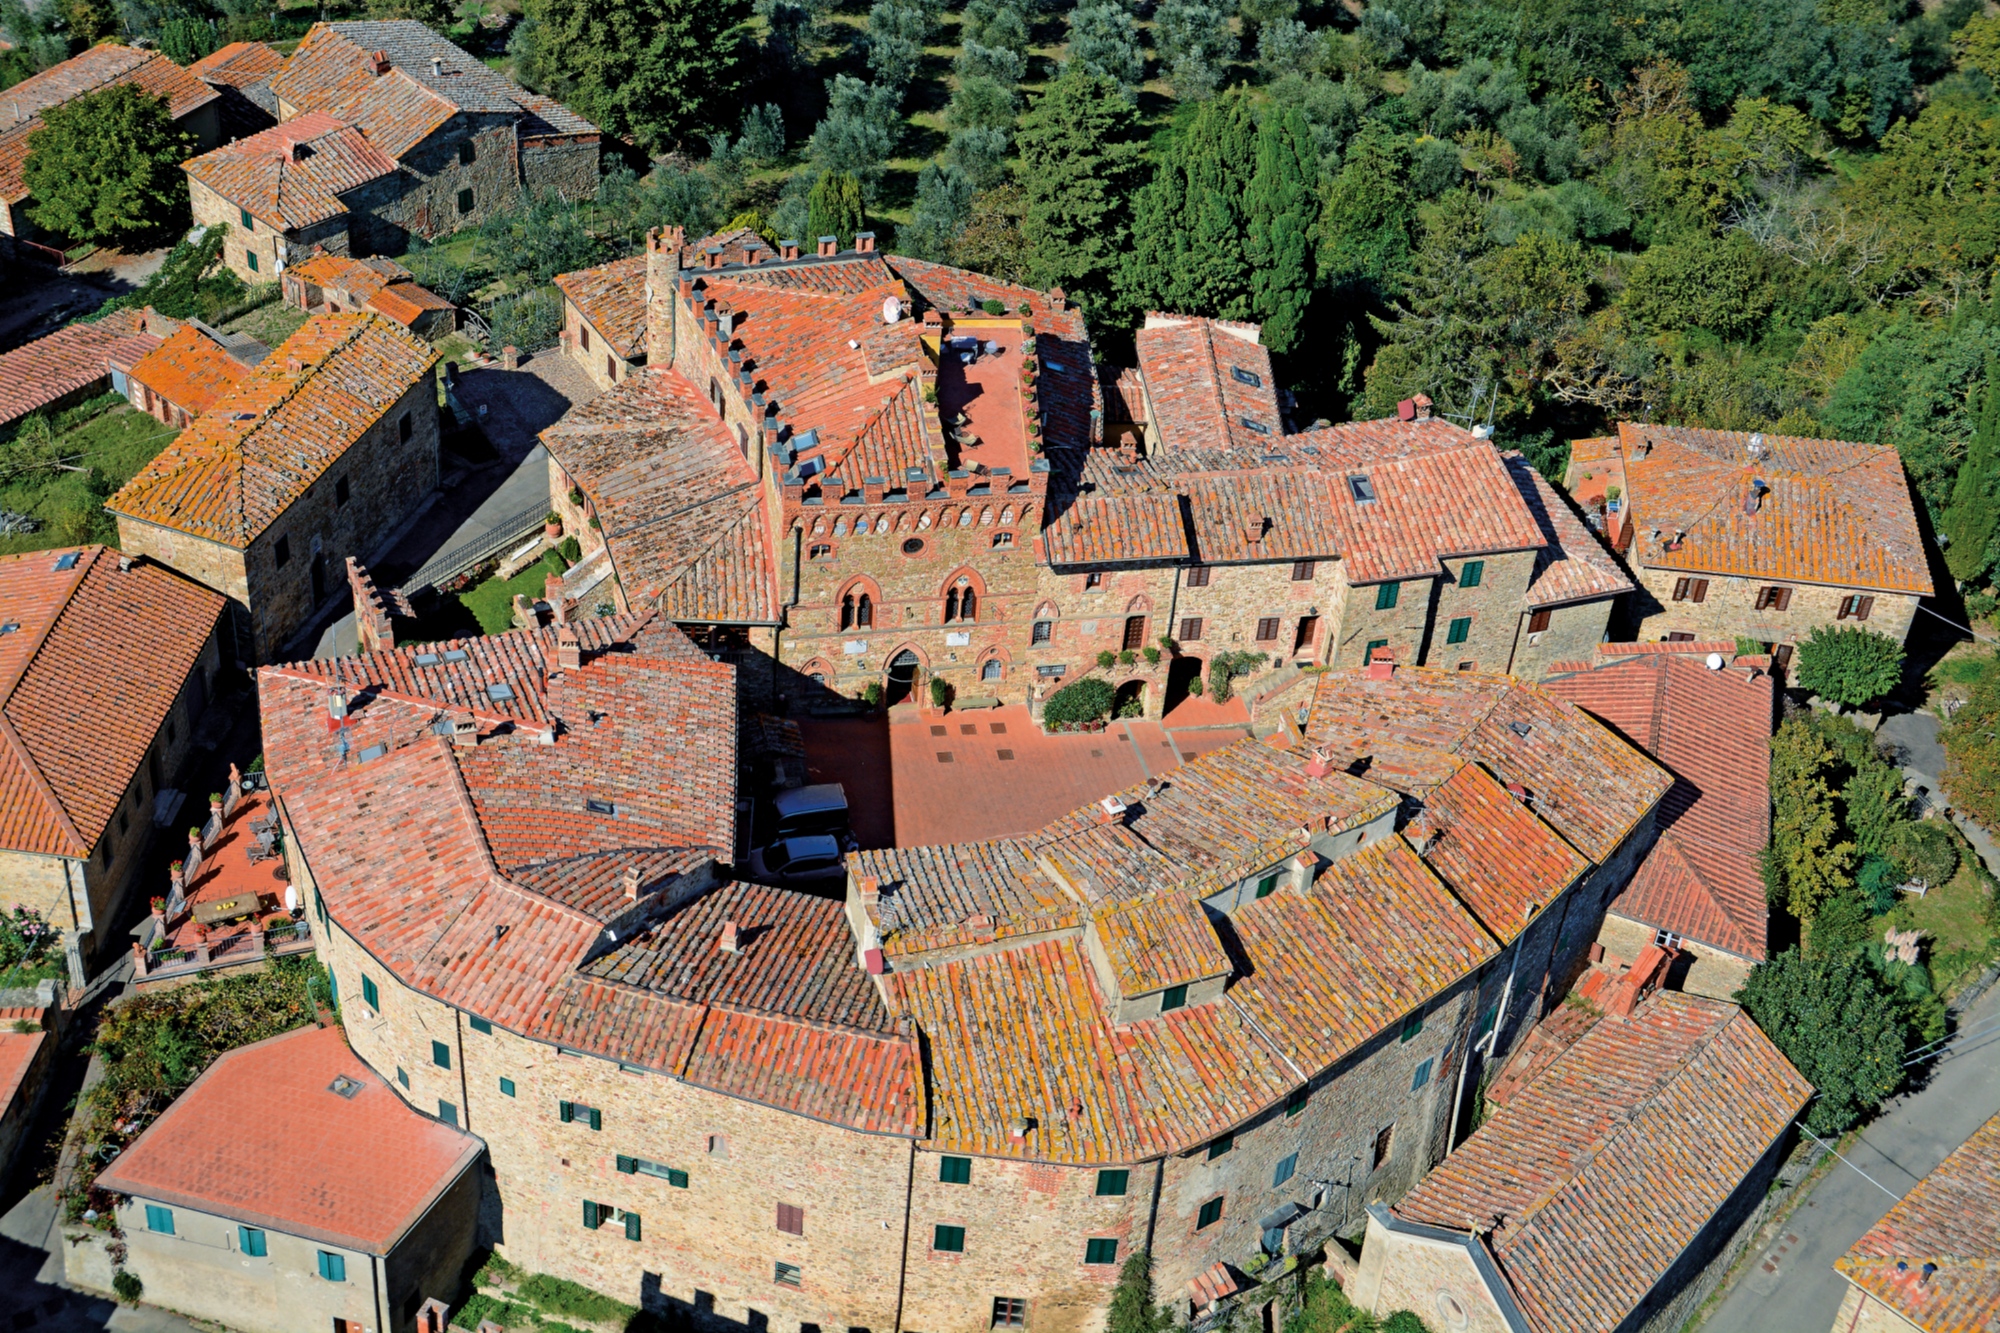 Aerial view of Montebenichi